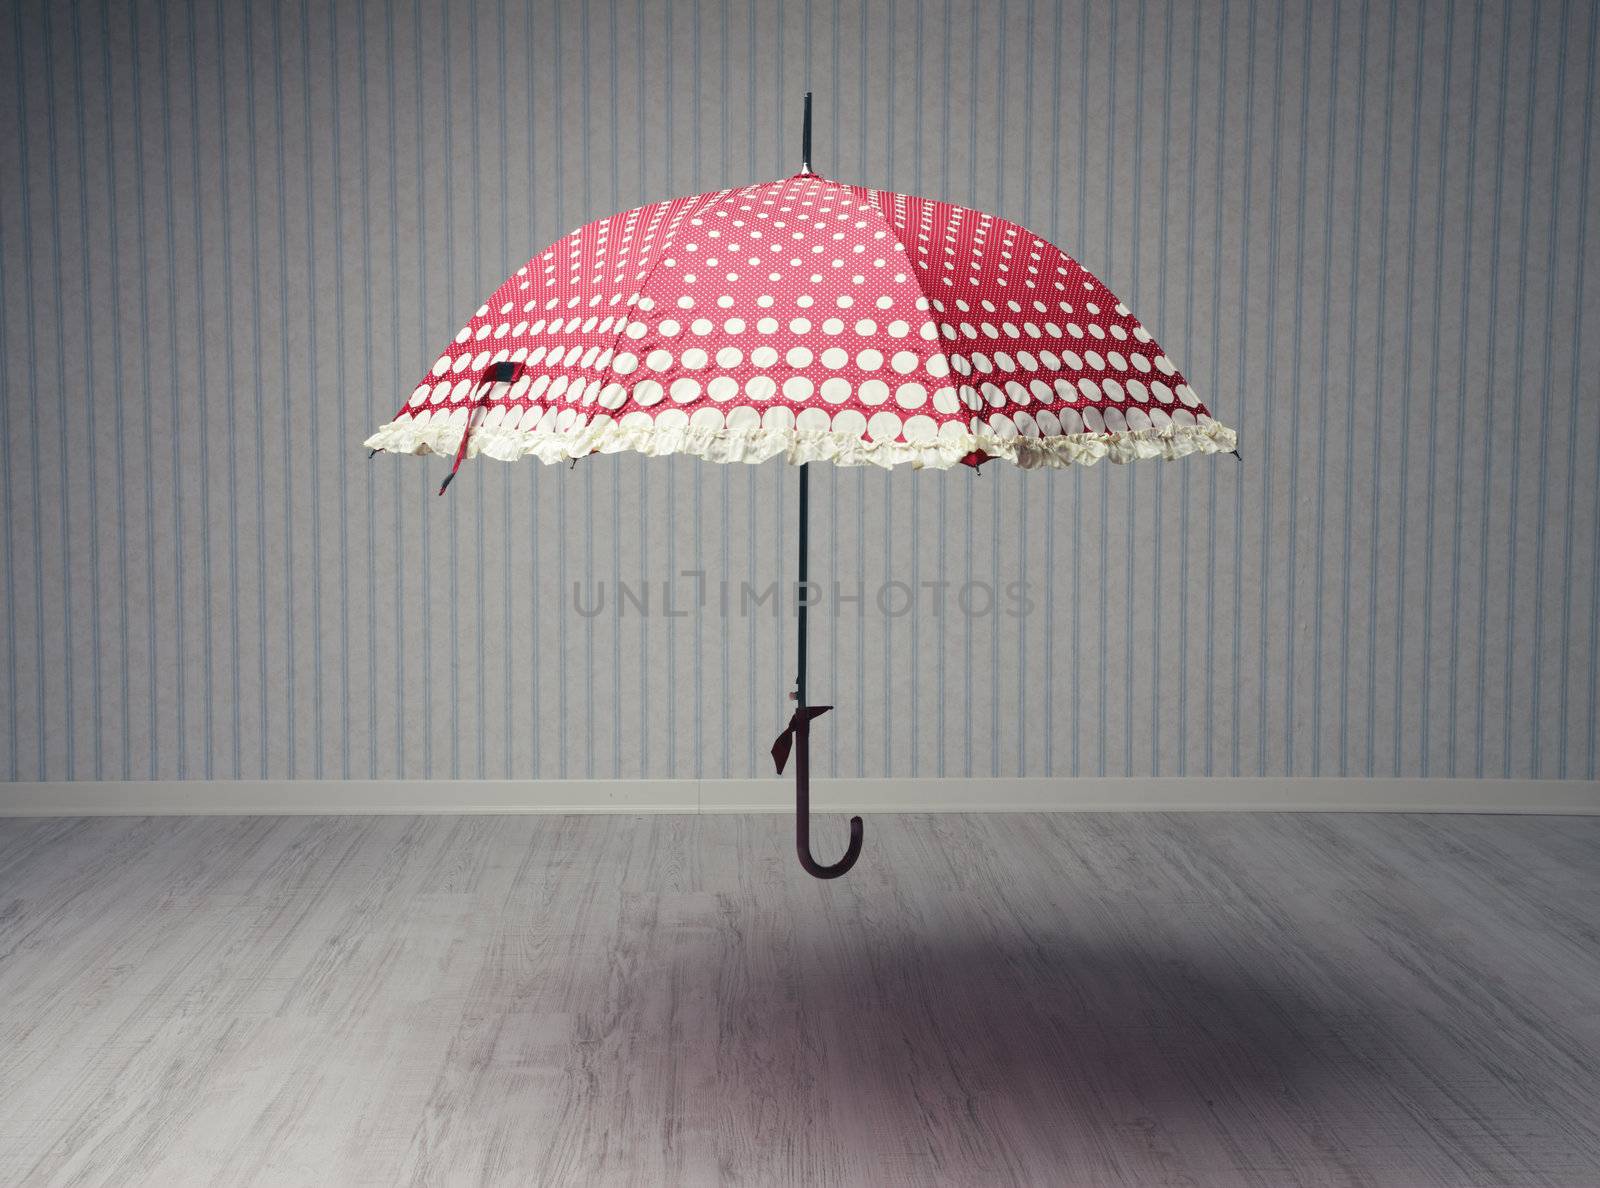 magical umbrella in an empty room